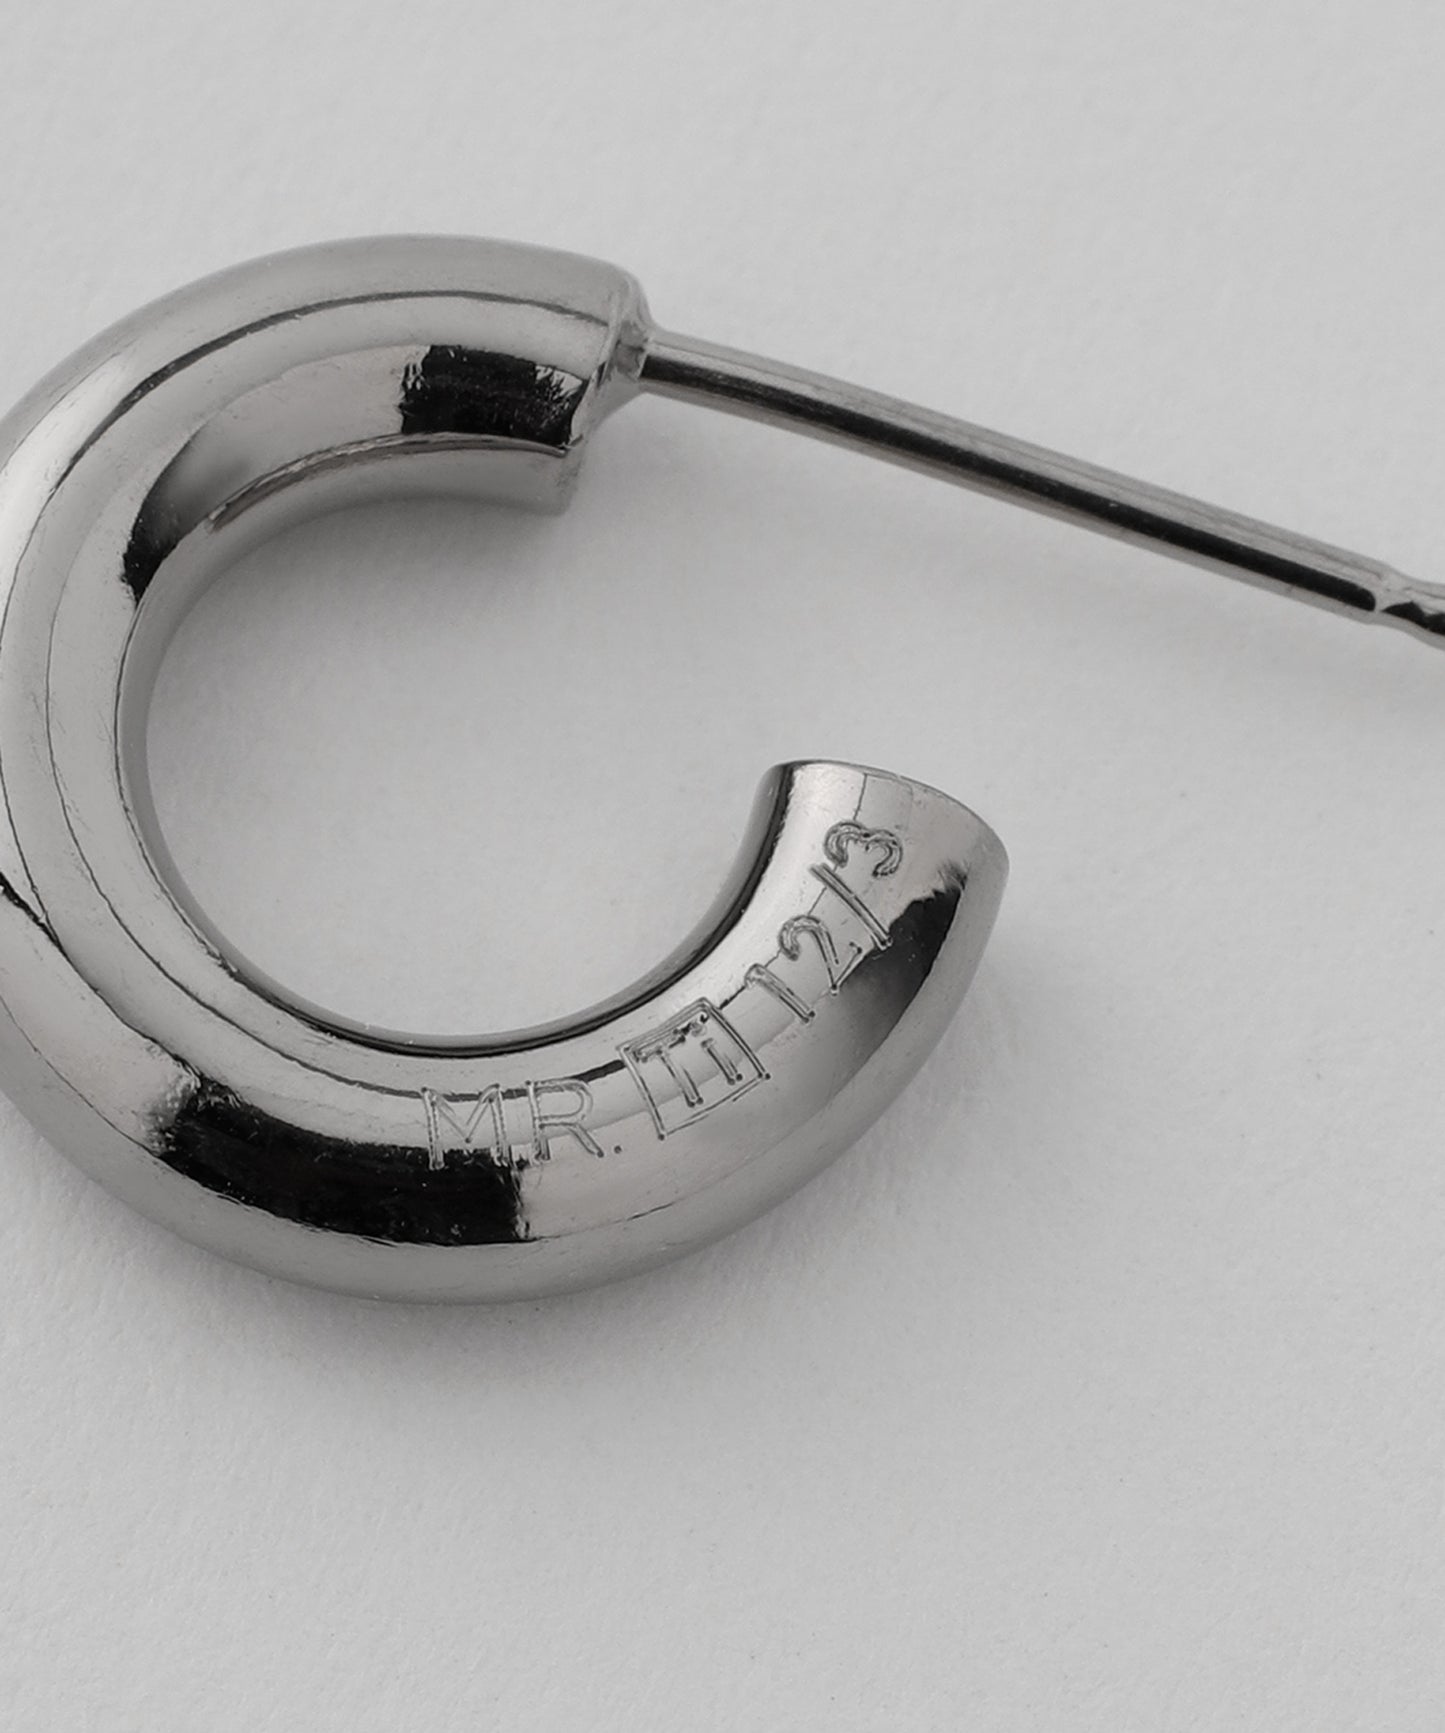 MR. Titanium Hoop Earrings [thickness 3mm]